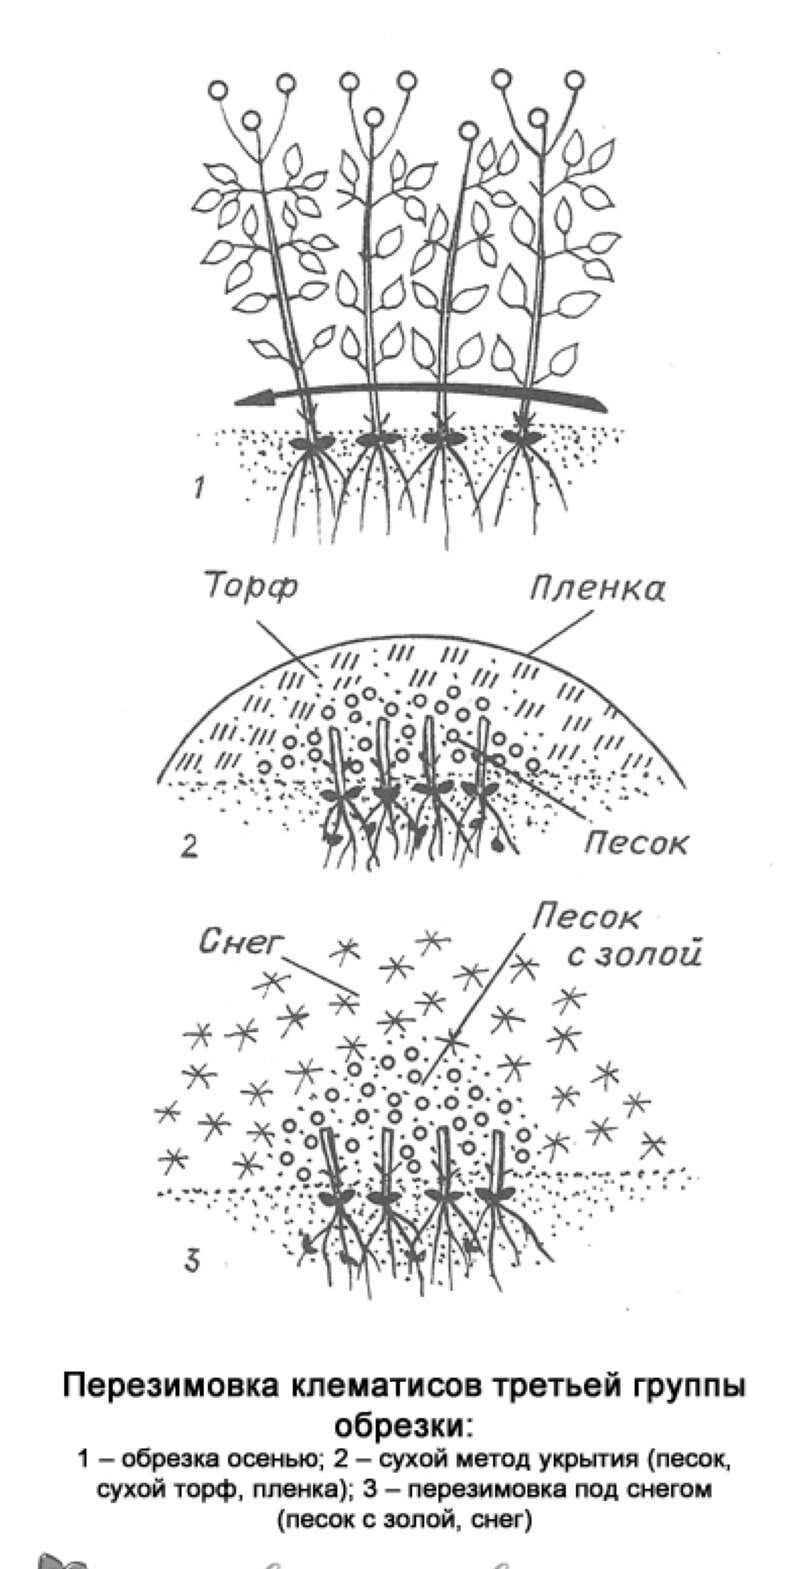 Клематис посадка и уход в открытом грунте размножение черенками группы клематиса сорта описание и фото